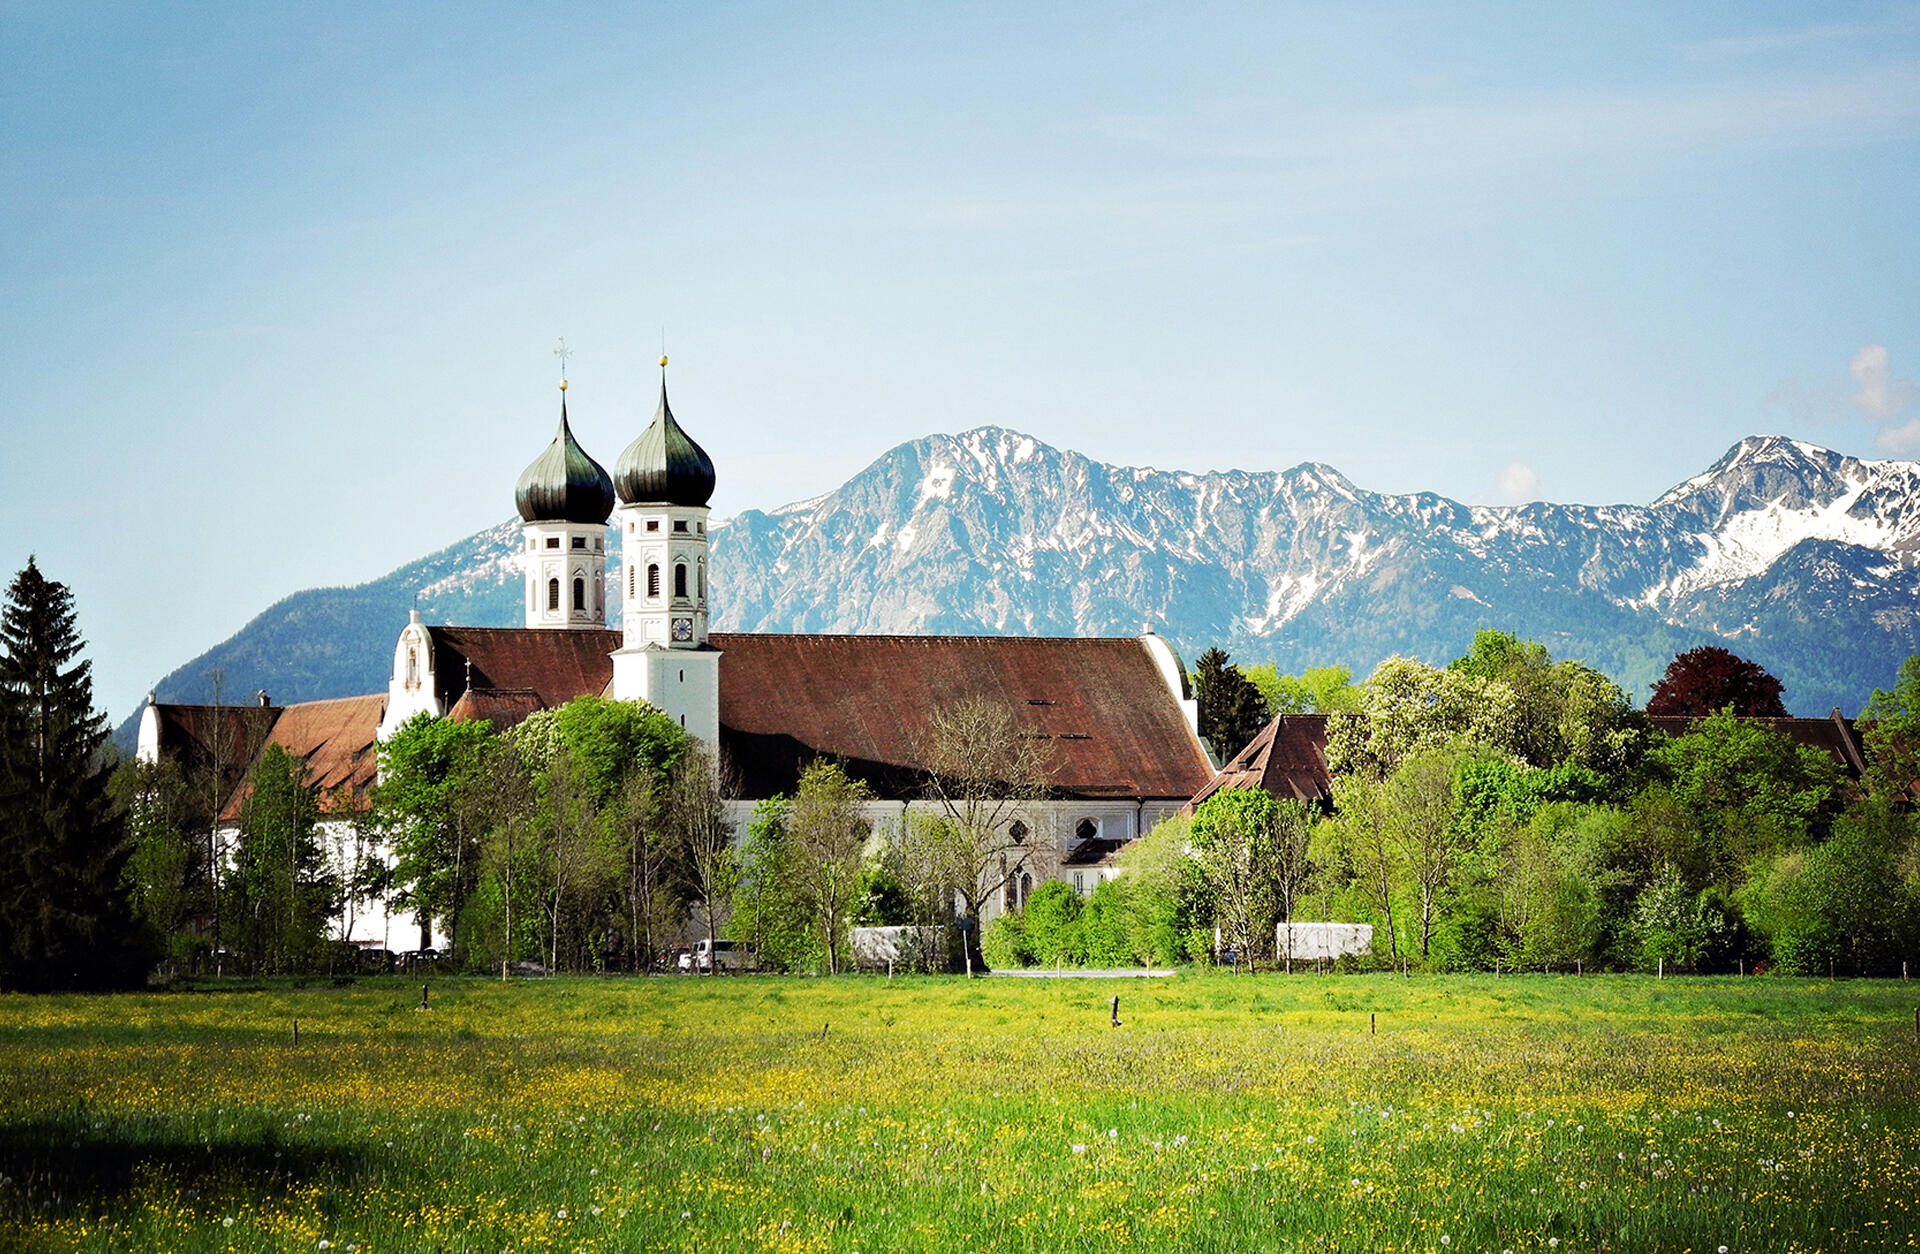 Blick auf die Anlage des Klosters Benediktbeuern mit seinen beiden Zwiebeltürmen vor einer sommerlichen Alpenkulisse.